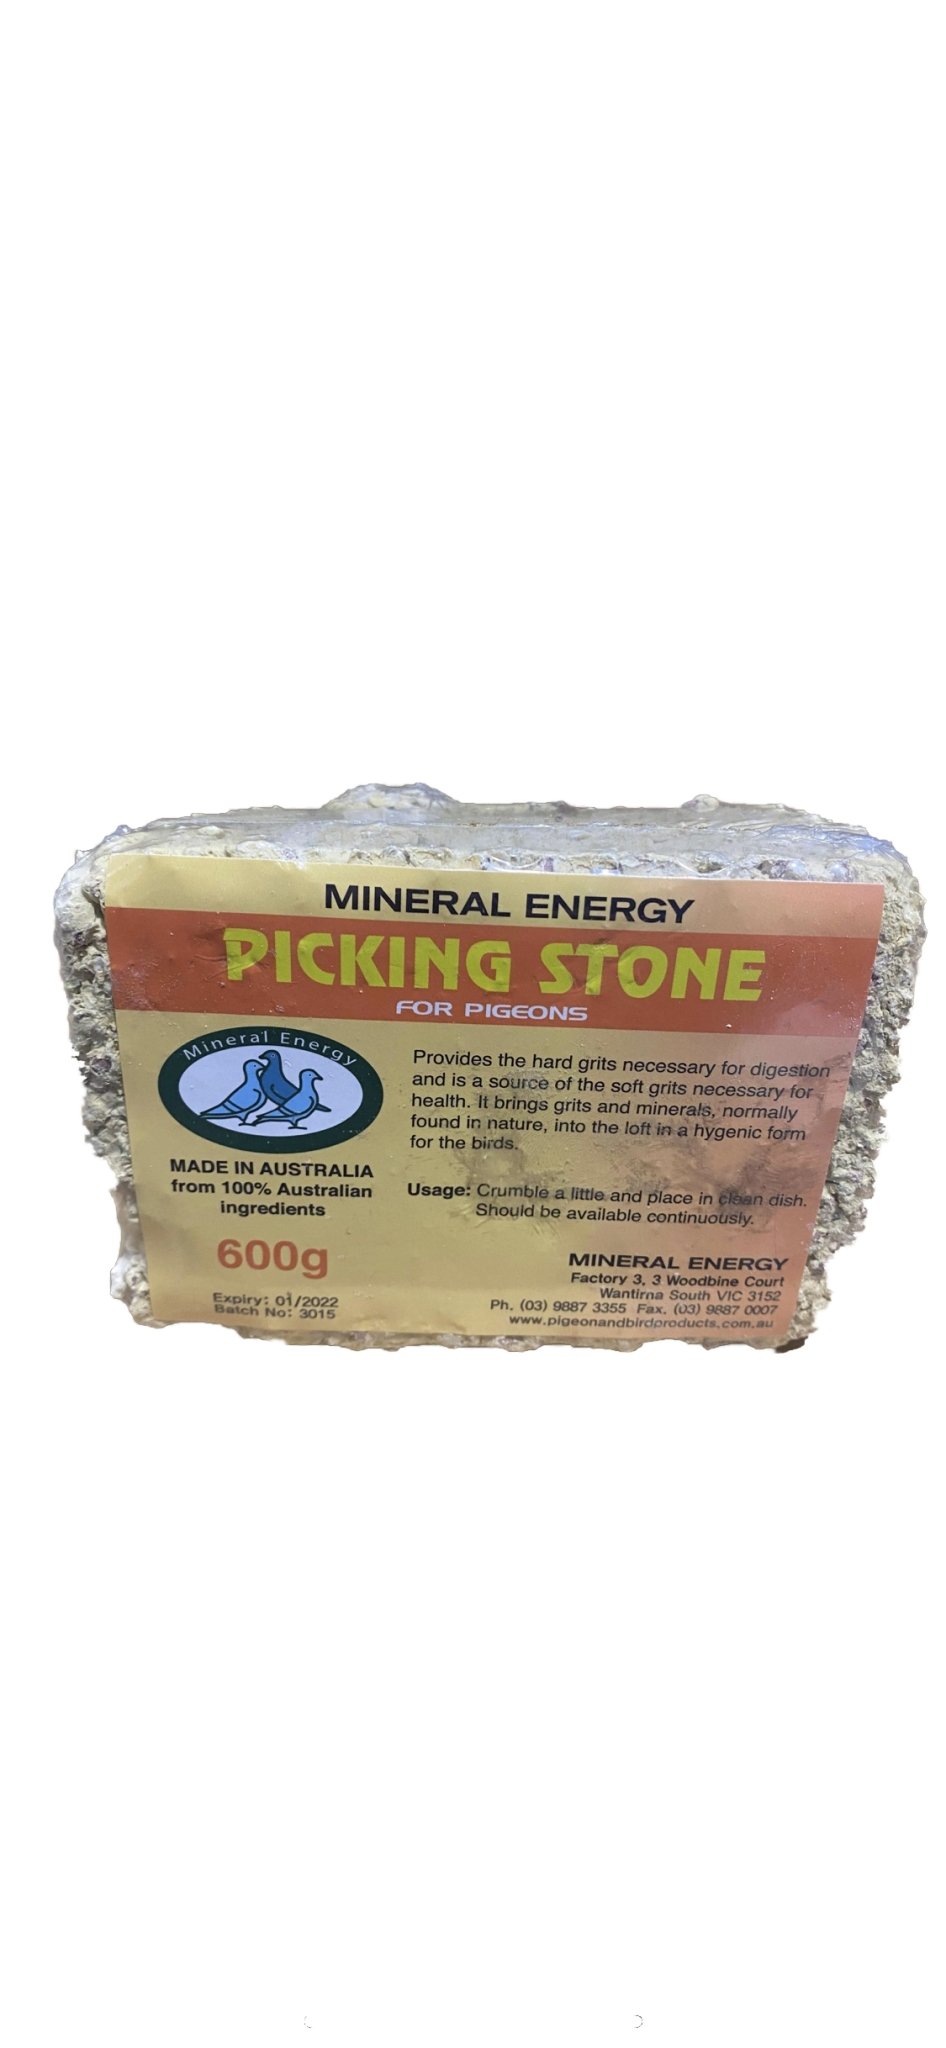 Mineral Energy Picking Stone 600g - Woonona Petfood & Produce